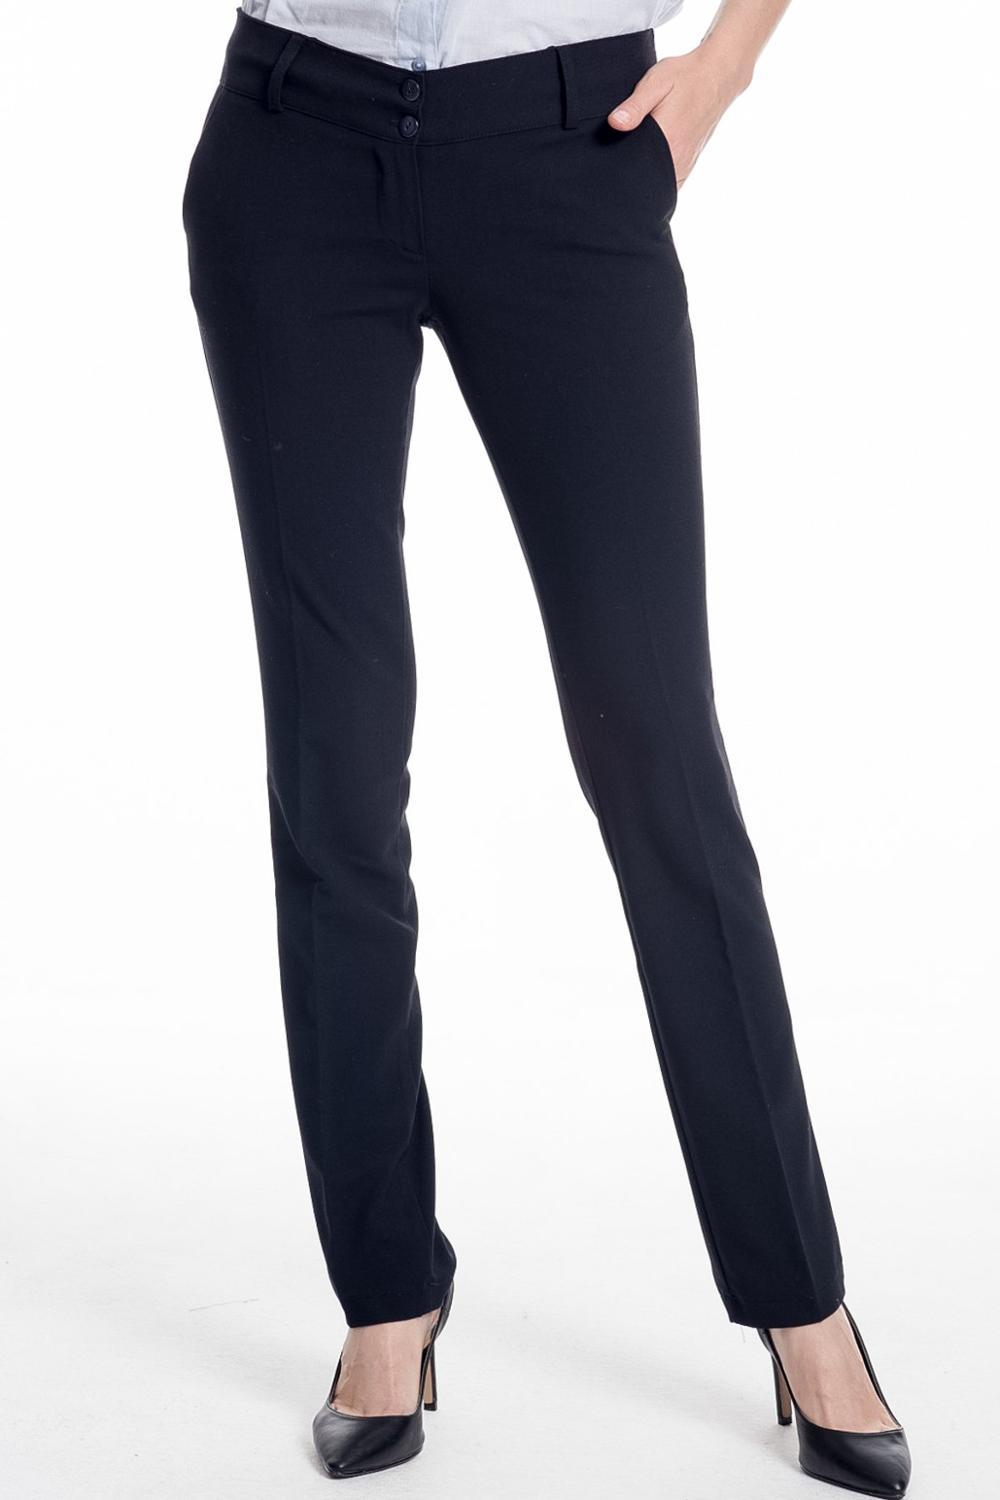 Изображение товара: Женская одежда больших размеров Hanezza, зимняя одежда с высокой посадкой, элегантные тканые брюки полной длины + 2XL - 7XL + Большие размеры, сезонные шикарные джинсы + 44 - 54 уличная женская черная уличная одежда большого размера, 2021 темно-синий